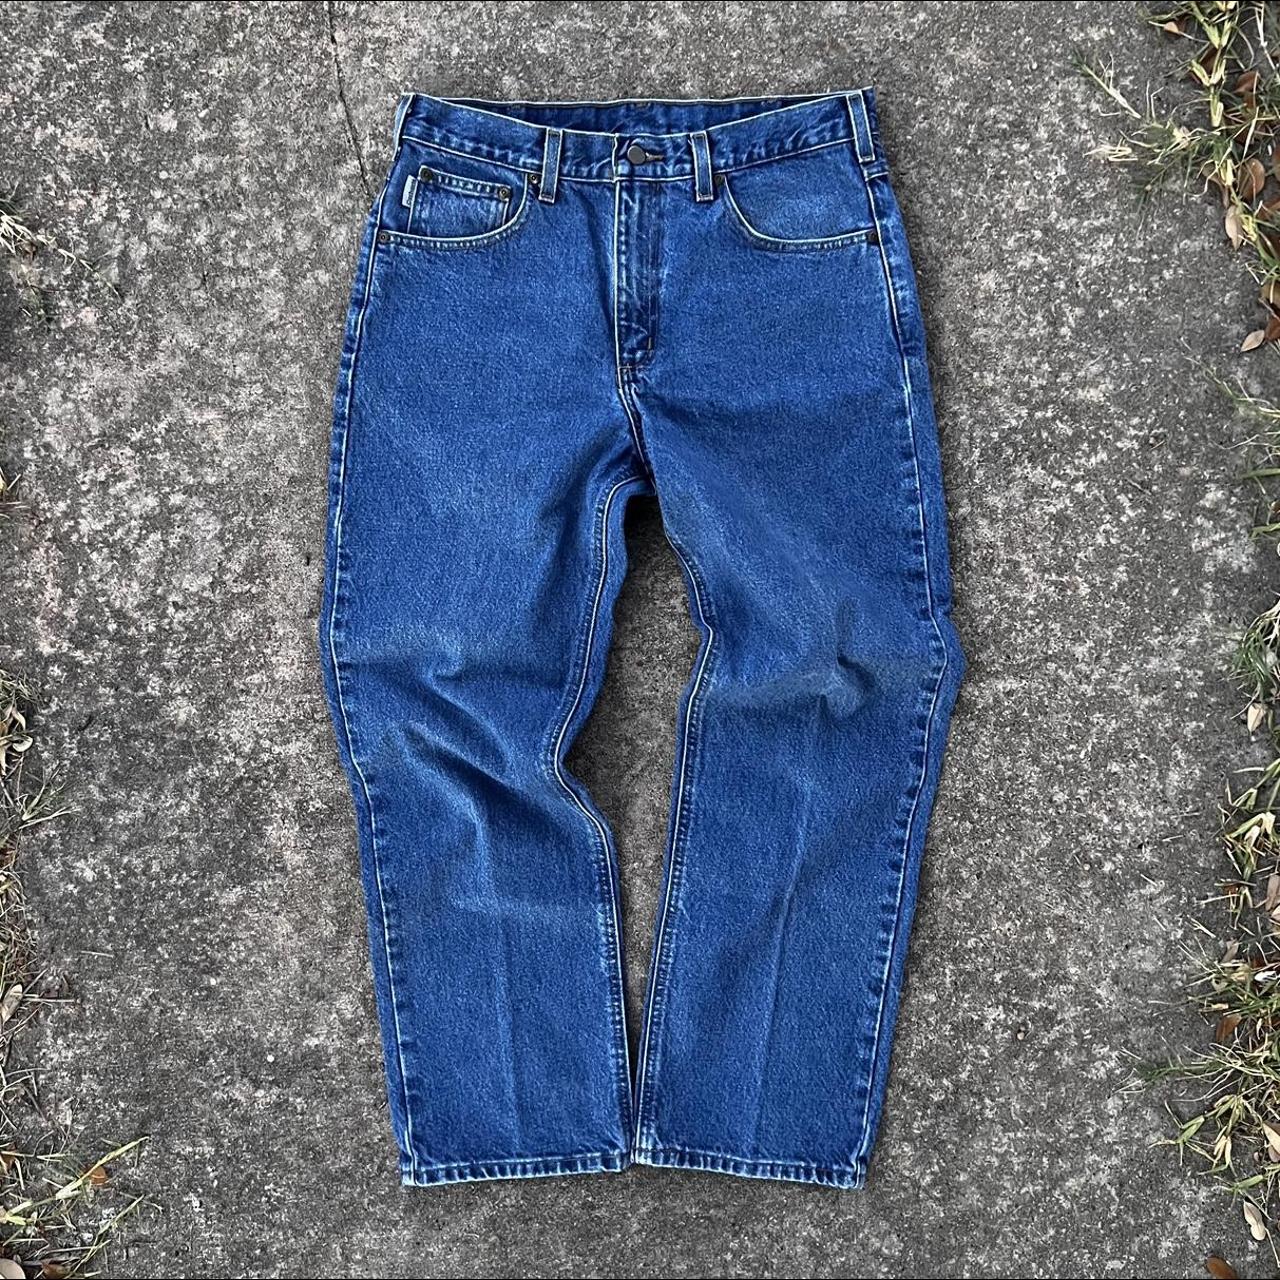 00s Vintage Carhartt Denim Jeans Pants SIZE 34 x... - Depop